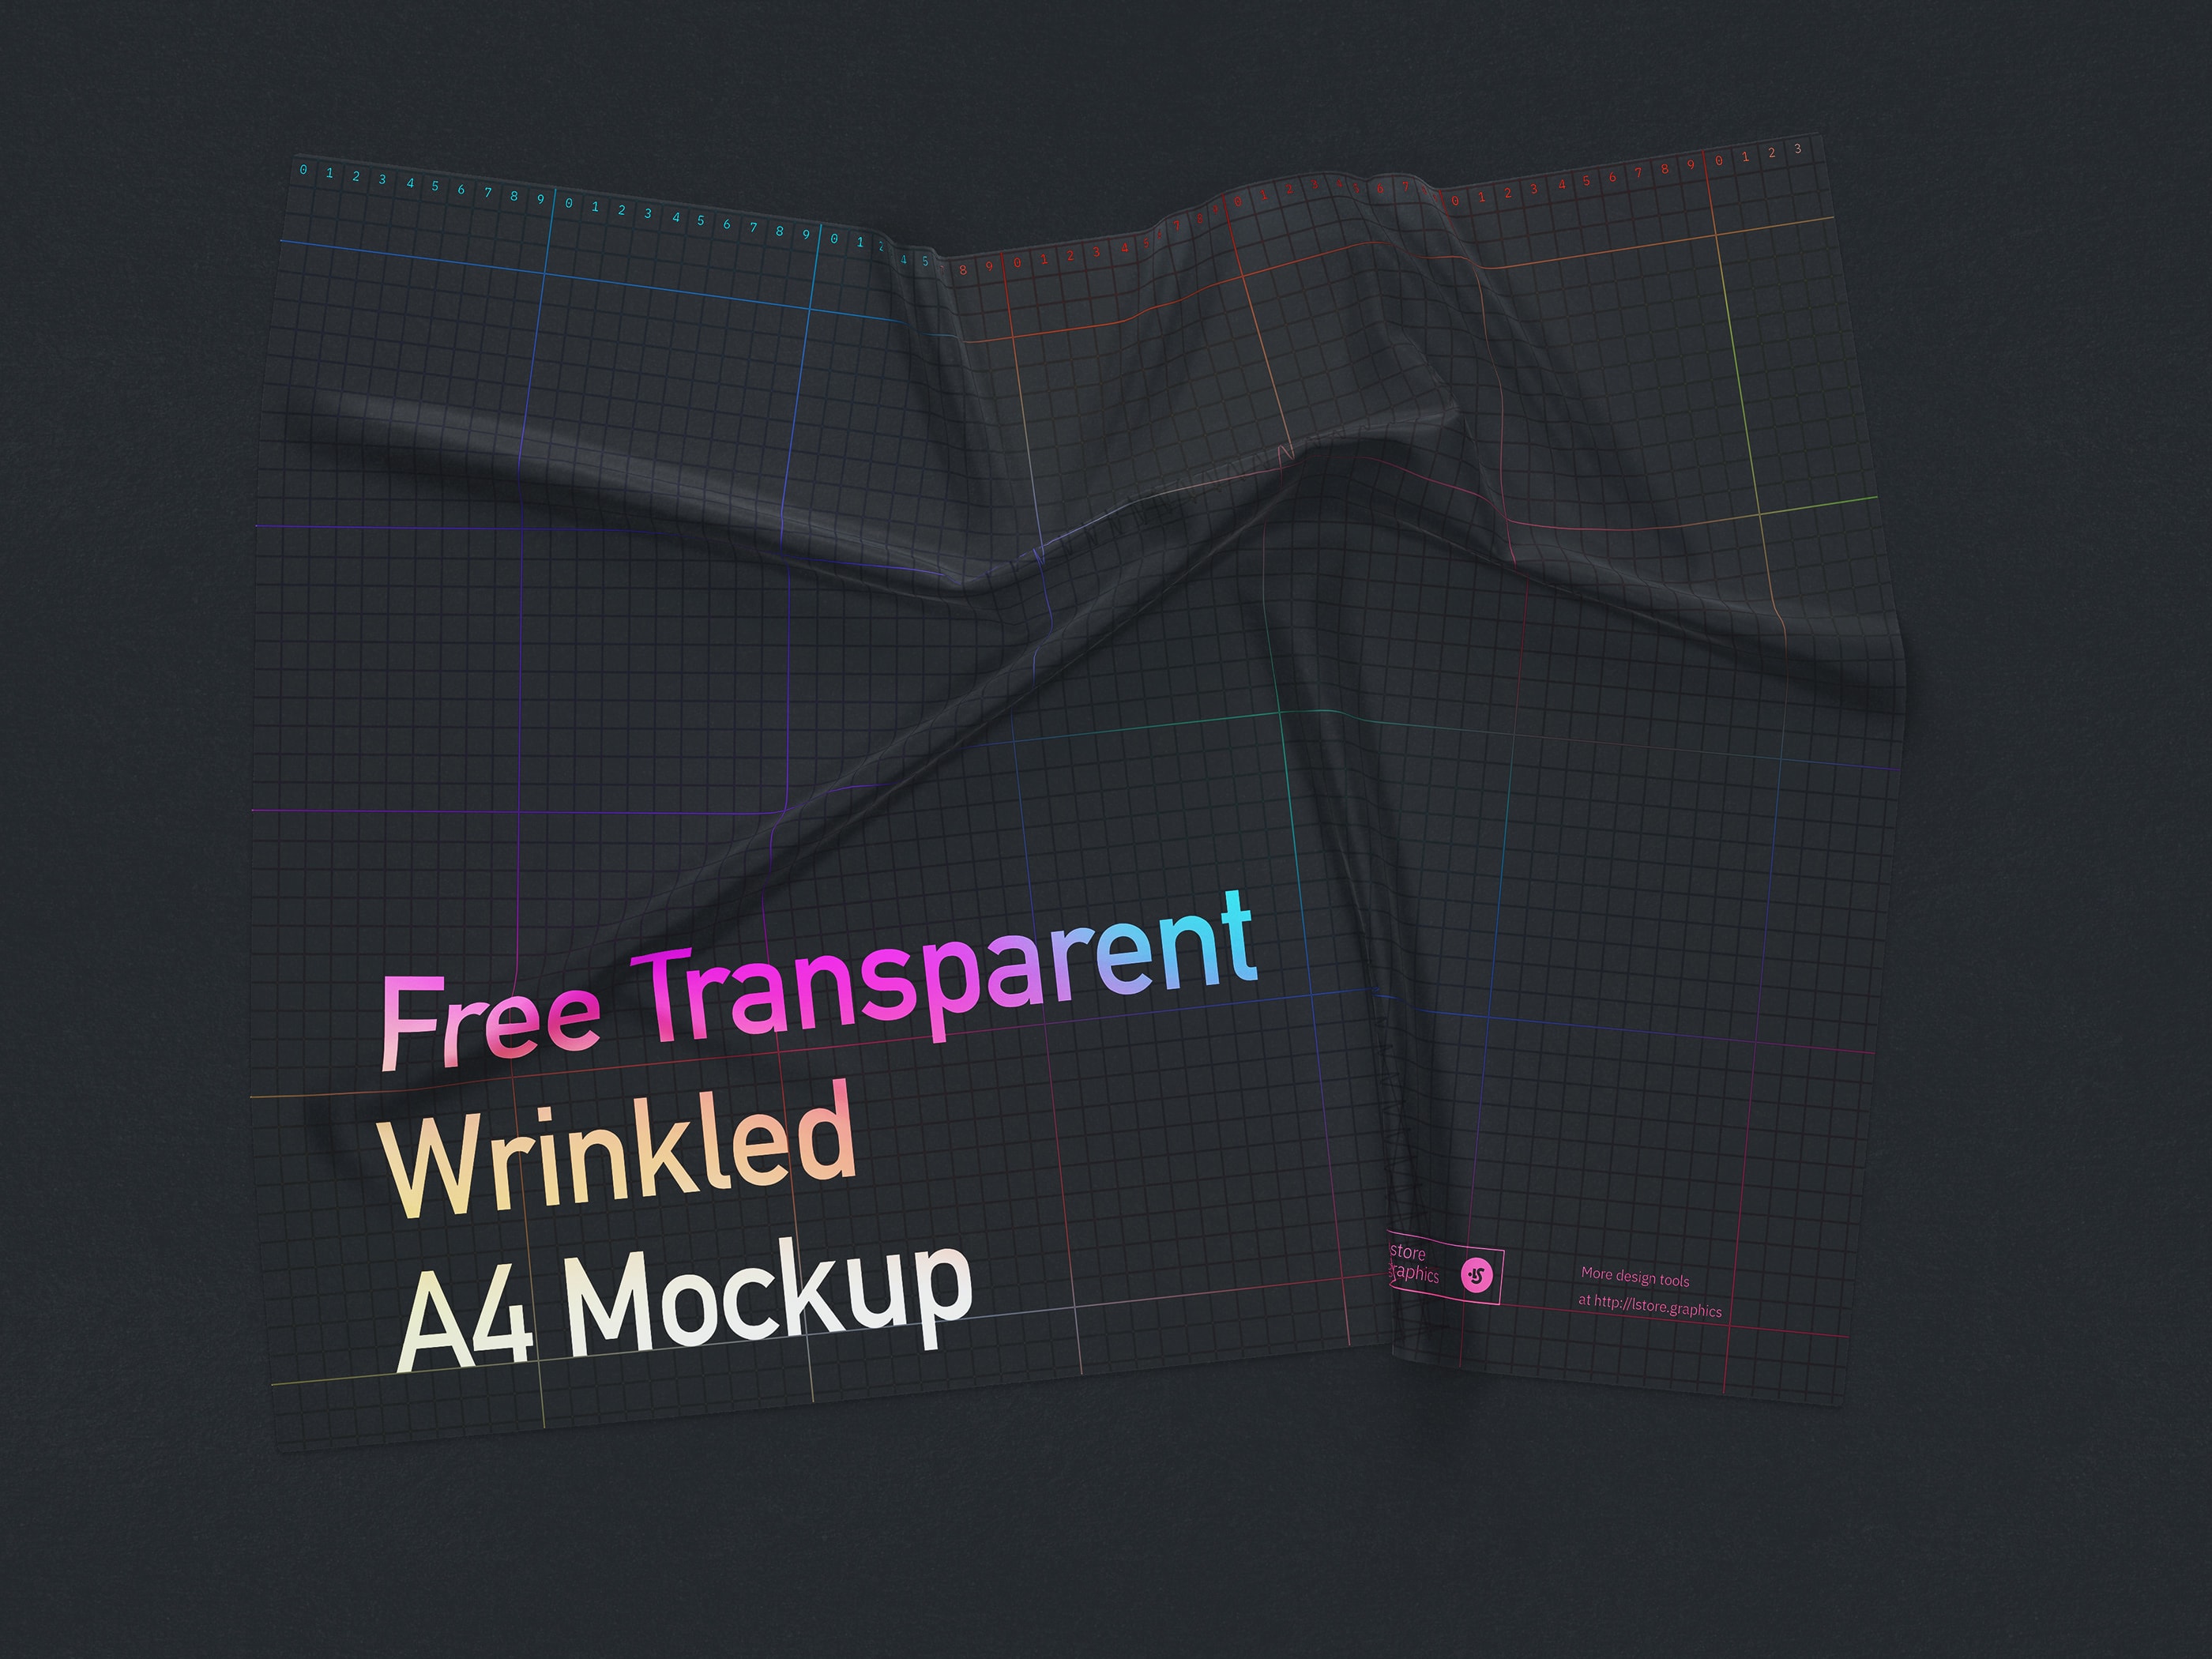 Free Transparent Wrinkled A4 Mockup